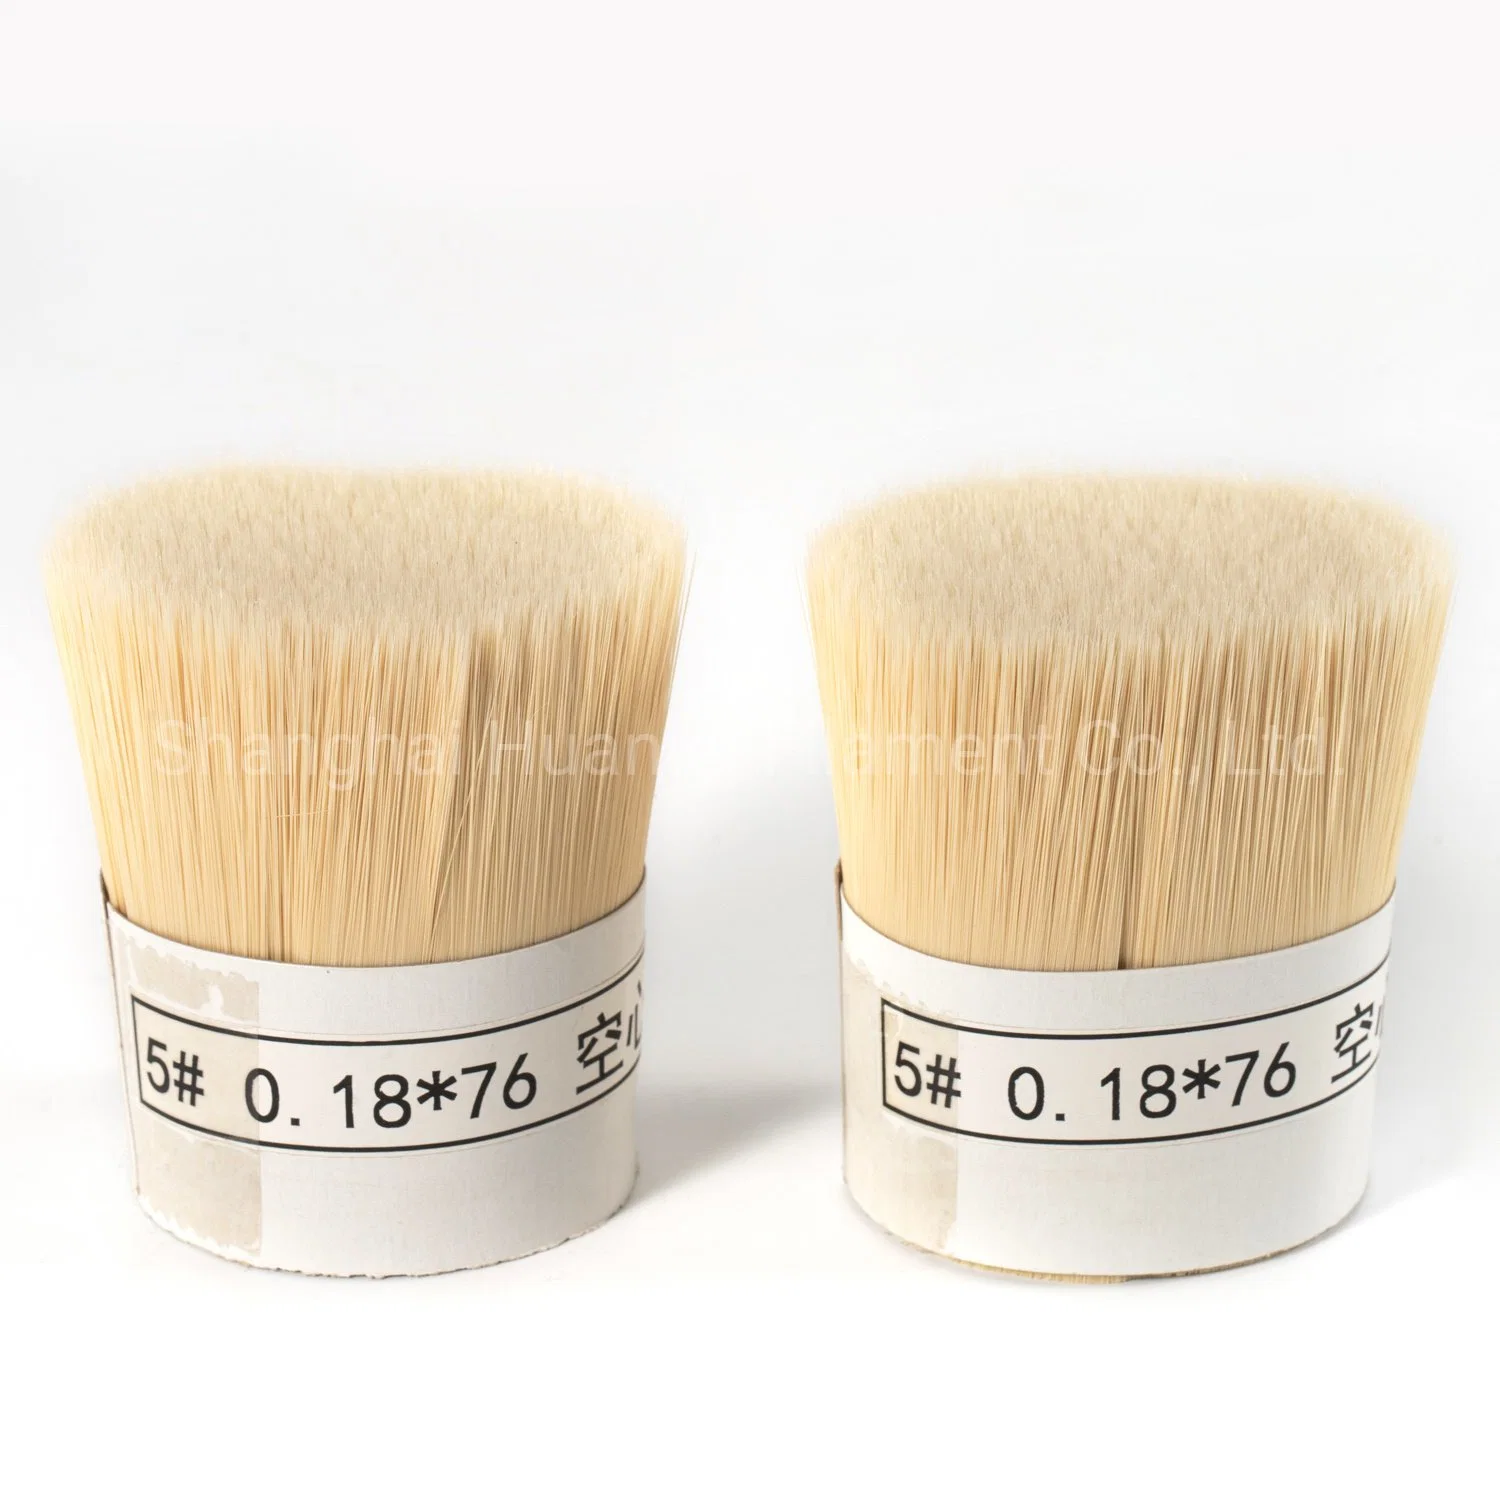 Имитация волос из натуральной щетины "Magic" полиэфирной нити накаливания для Paintbrushes